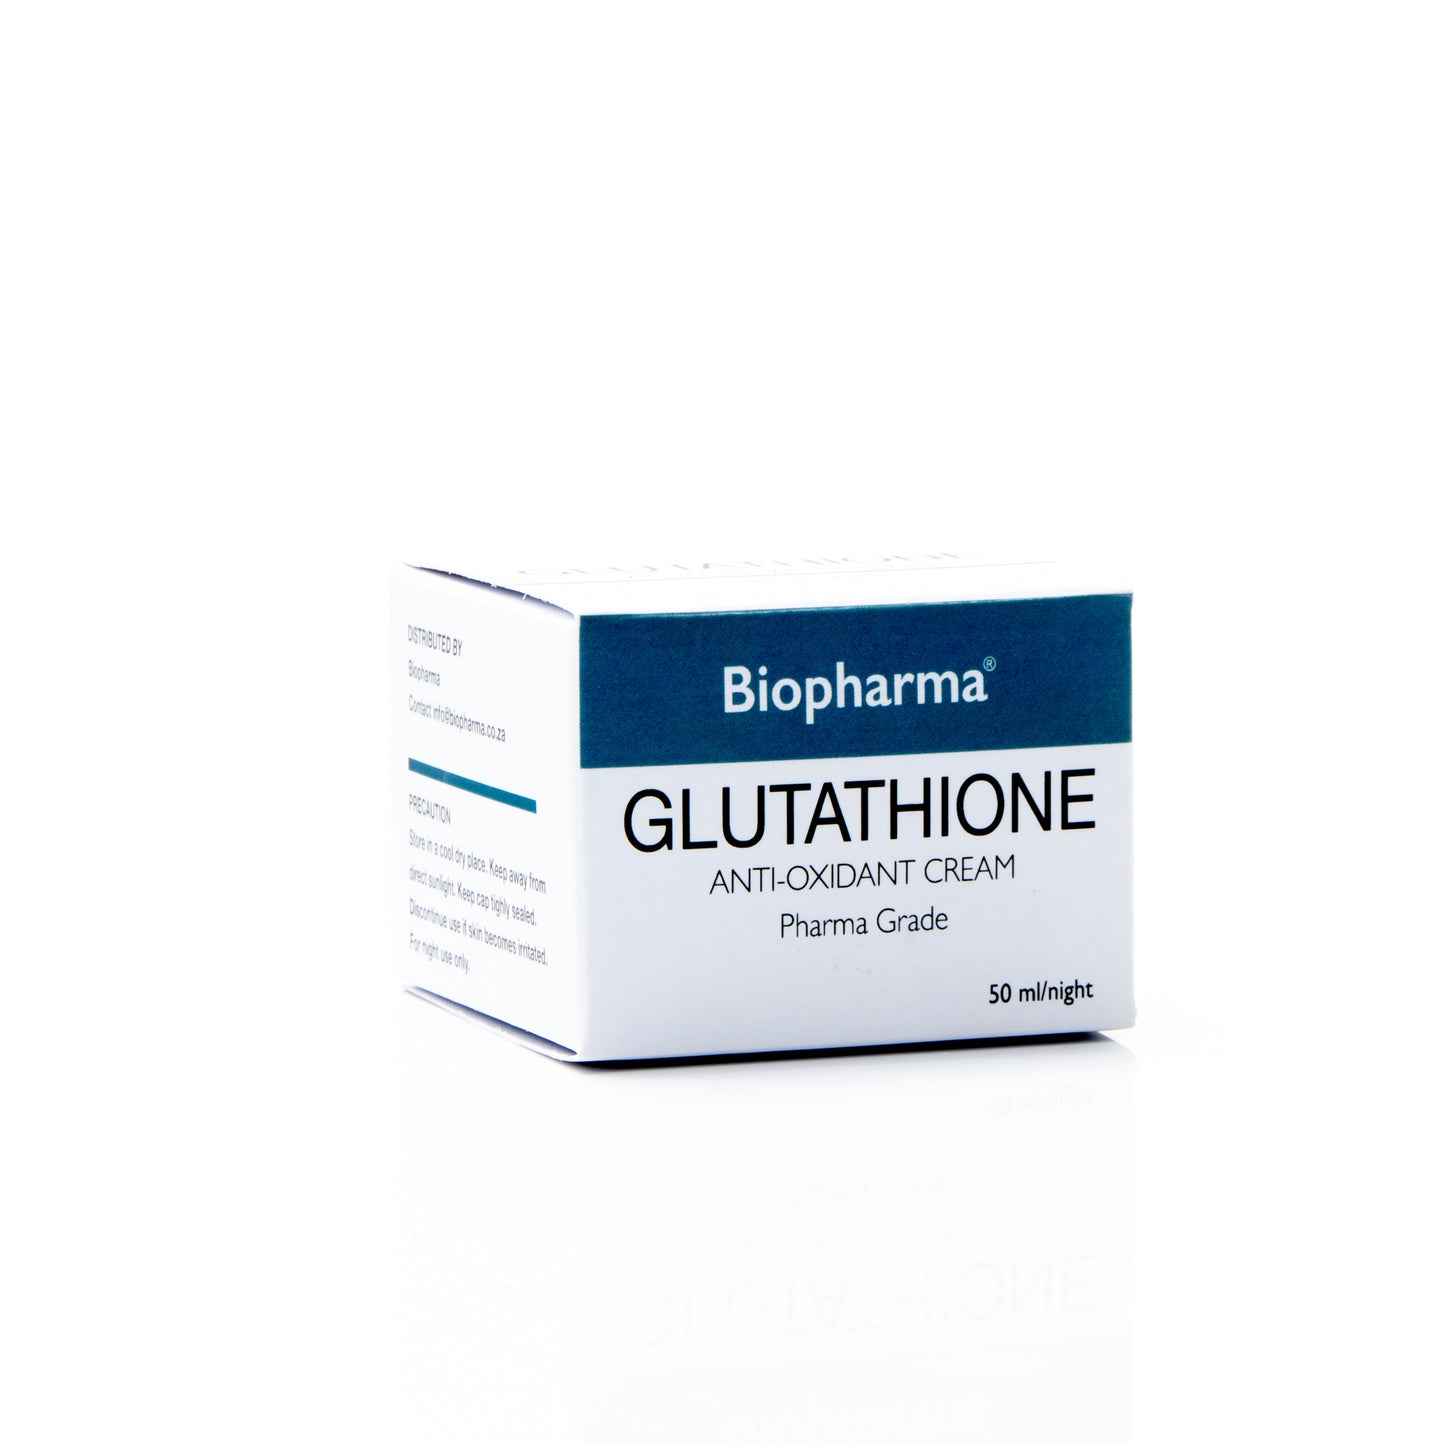 Biopharma Glutathione Anti-Oxidant Cream - 50ml